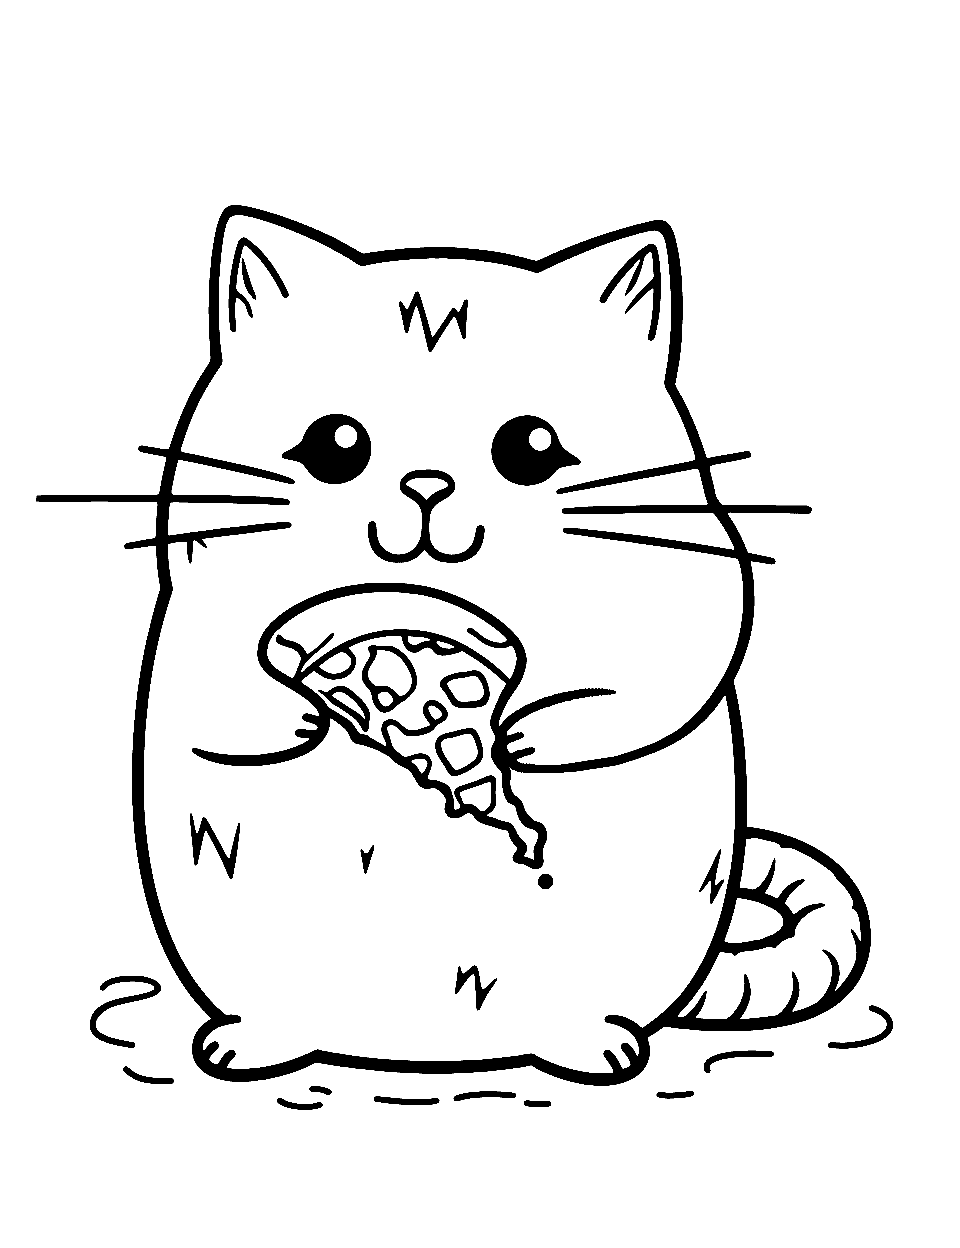 Pusheen's Yummy Treat Kitten Coloring Page - Pusheen the cat enjoying a big slice of pizza.